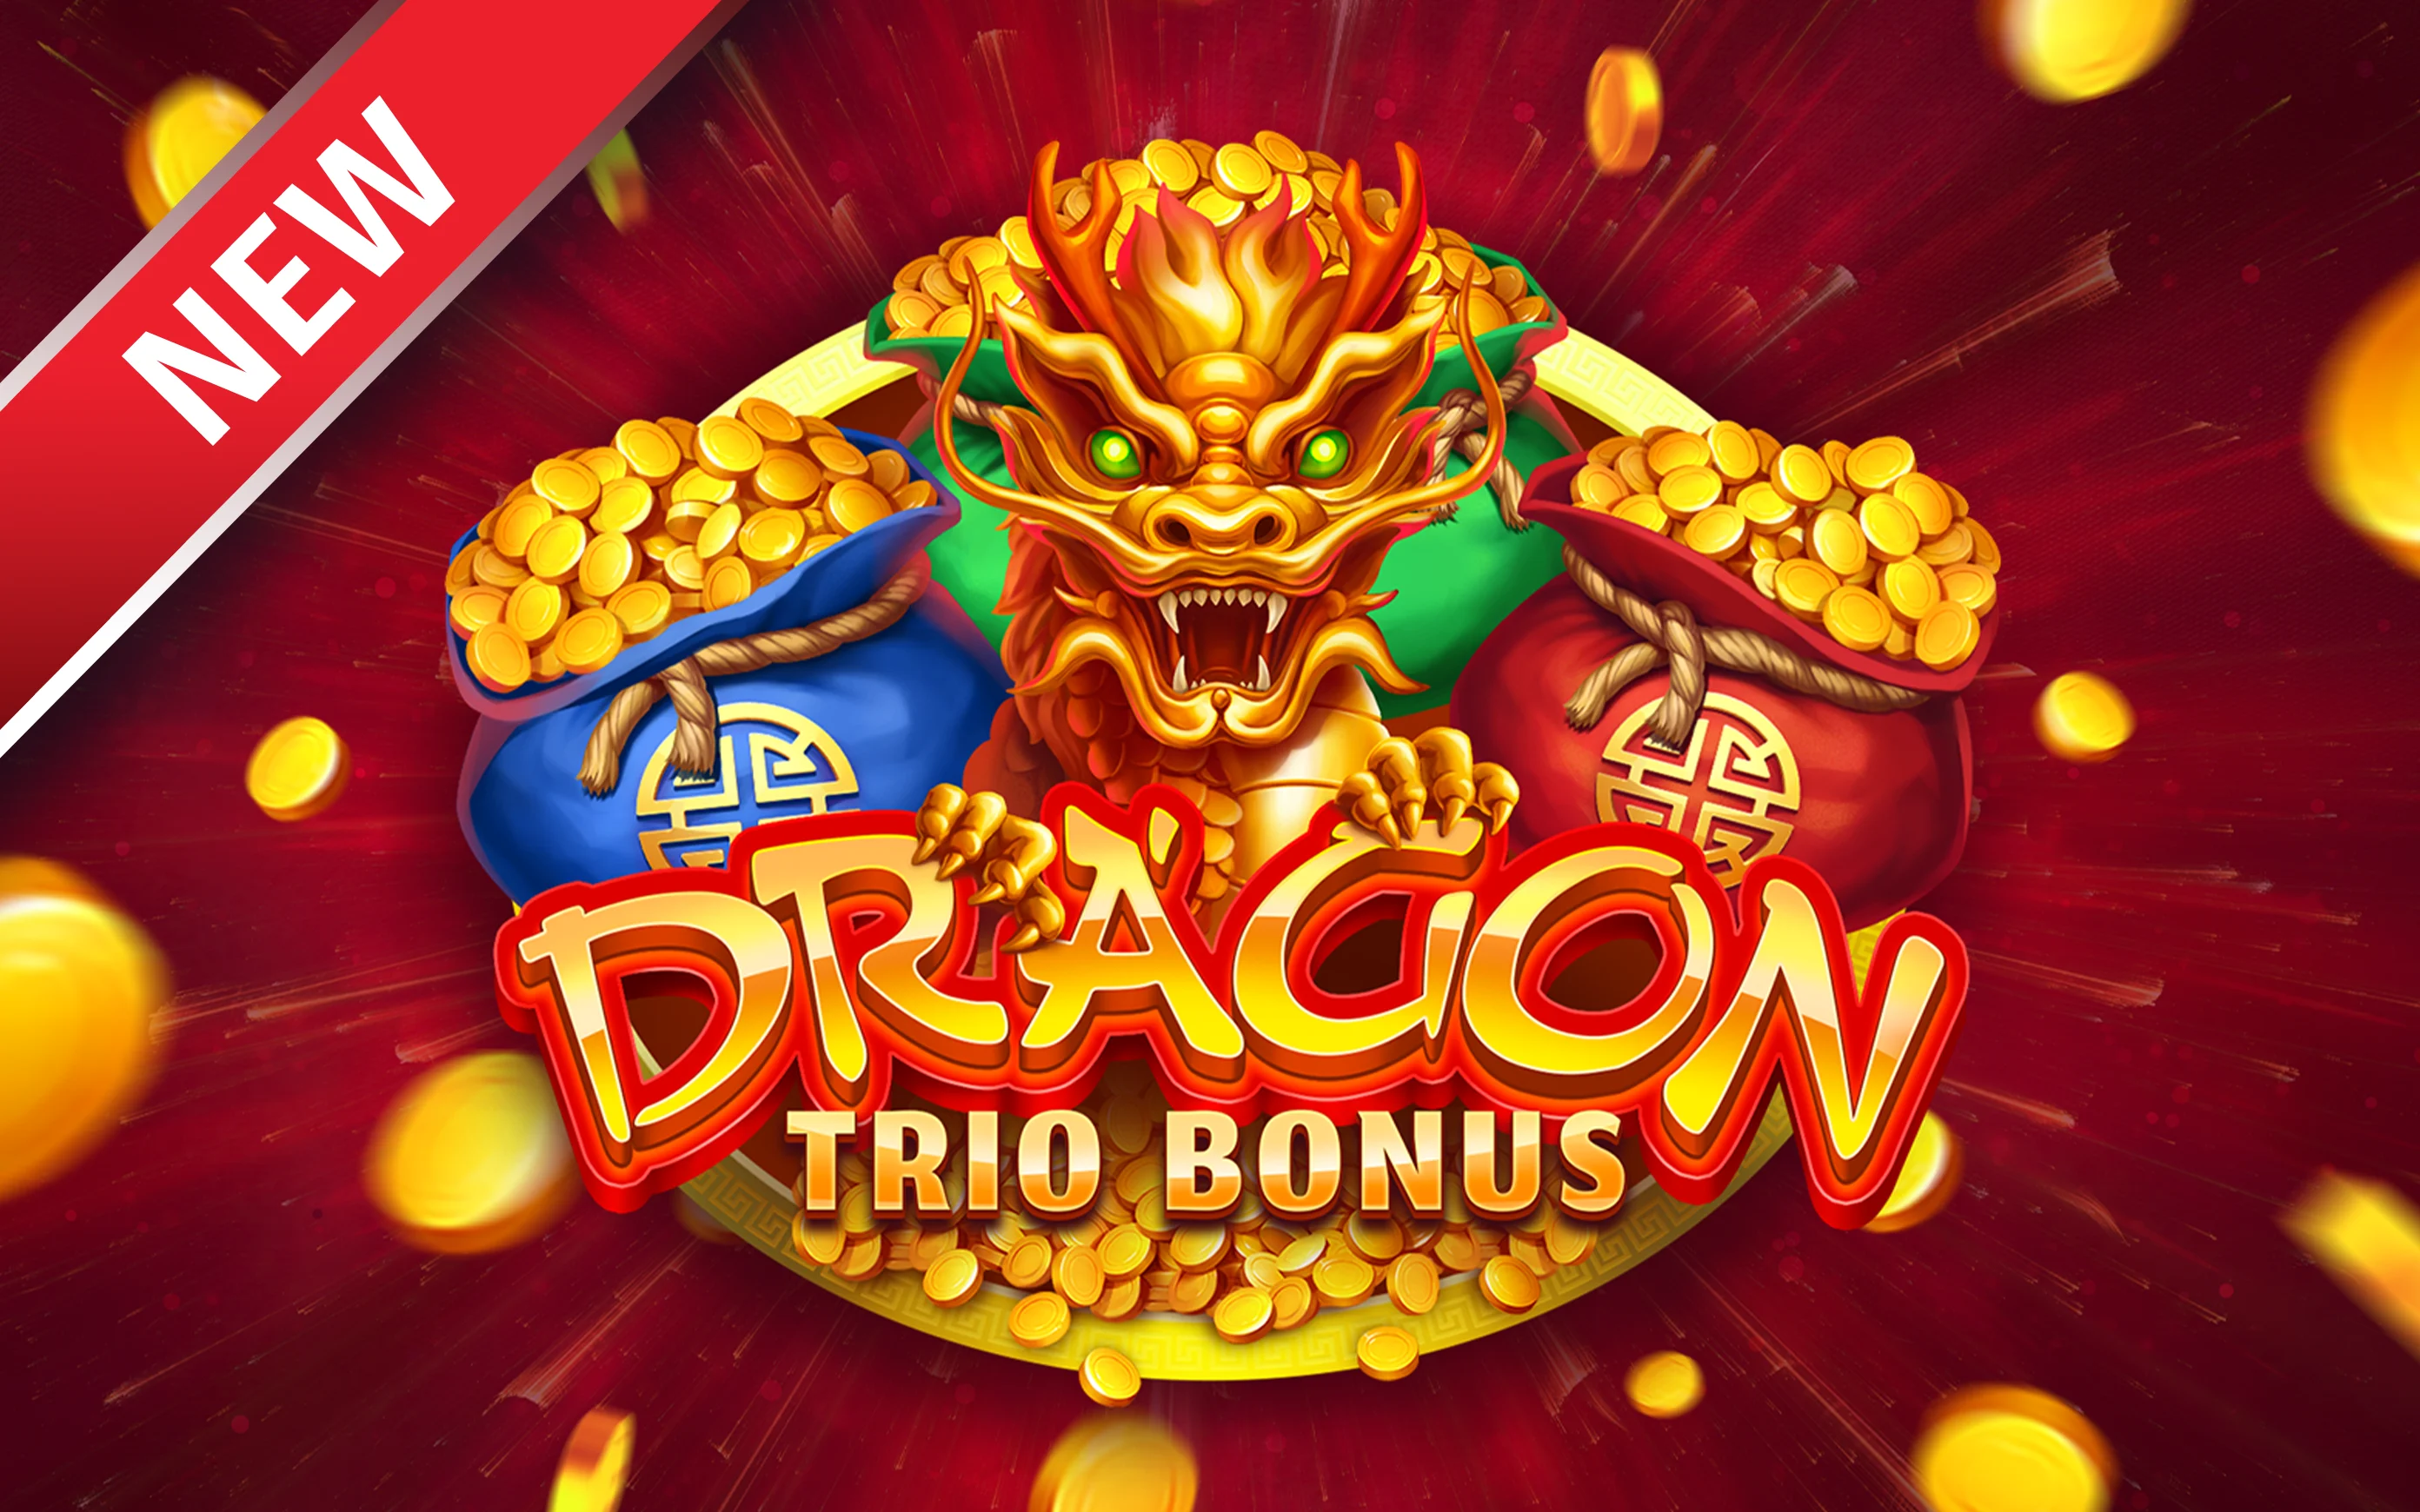 Juega a Dragon Trio Bonus en el casino en línea de Starcasino.be